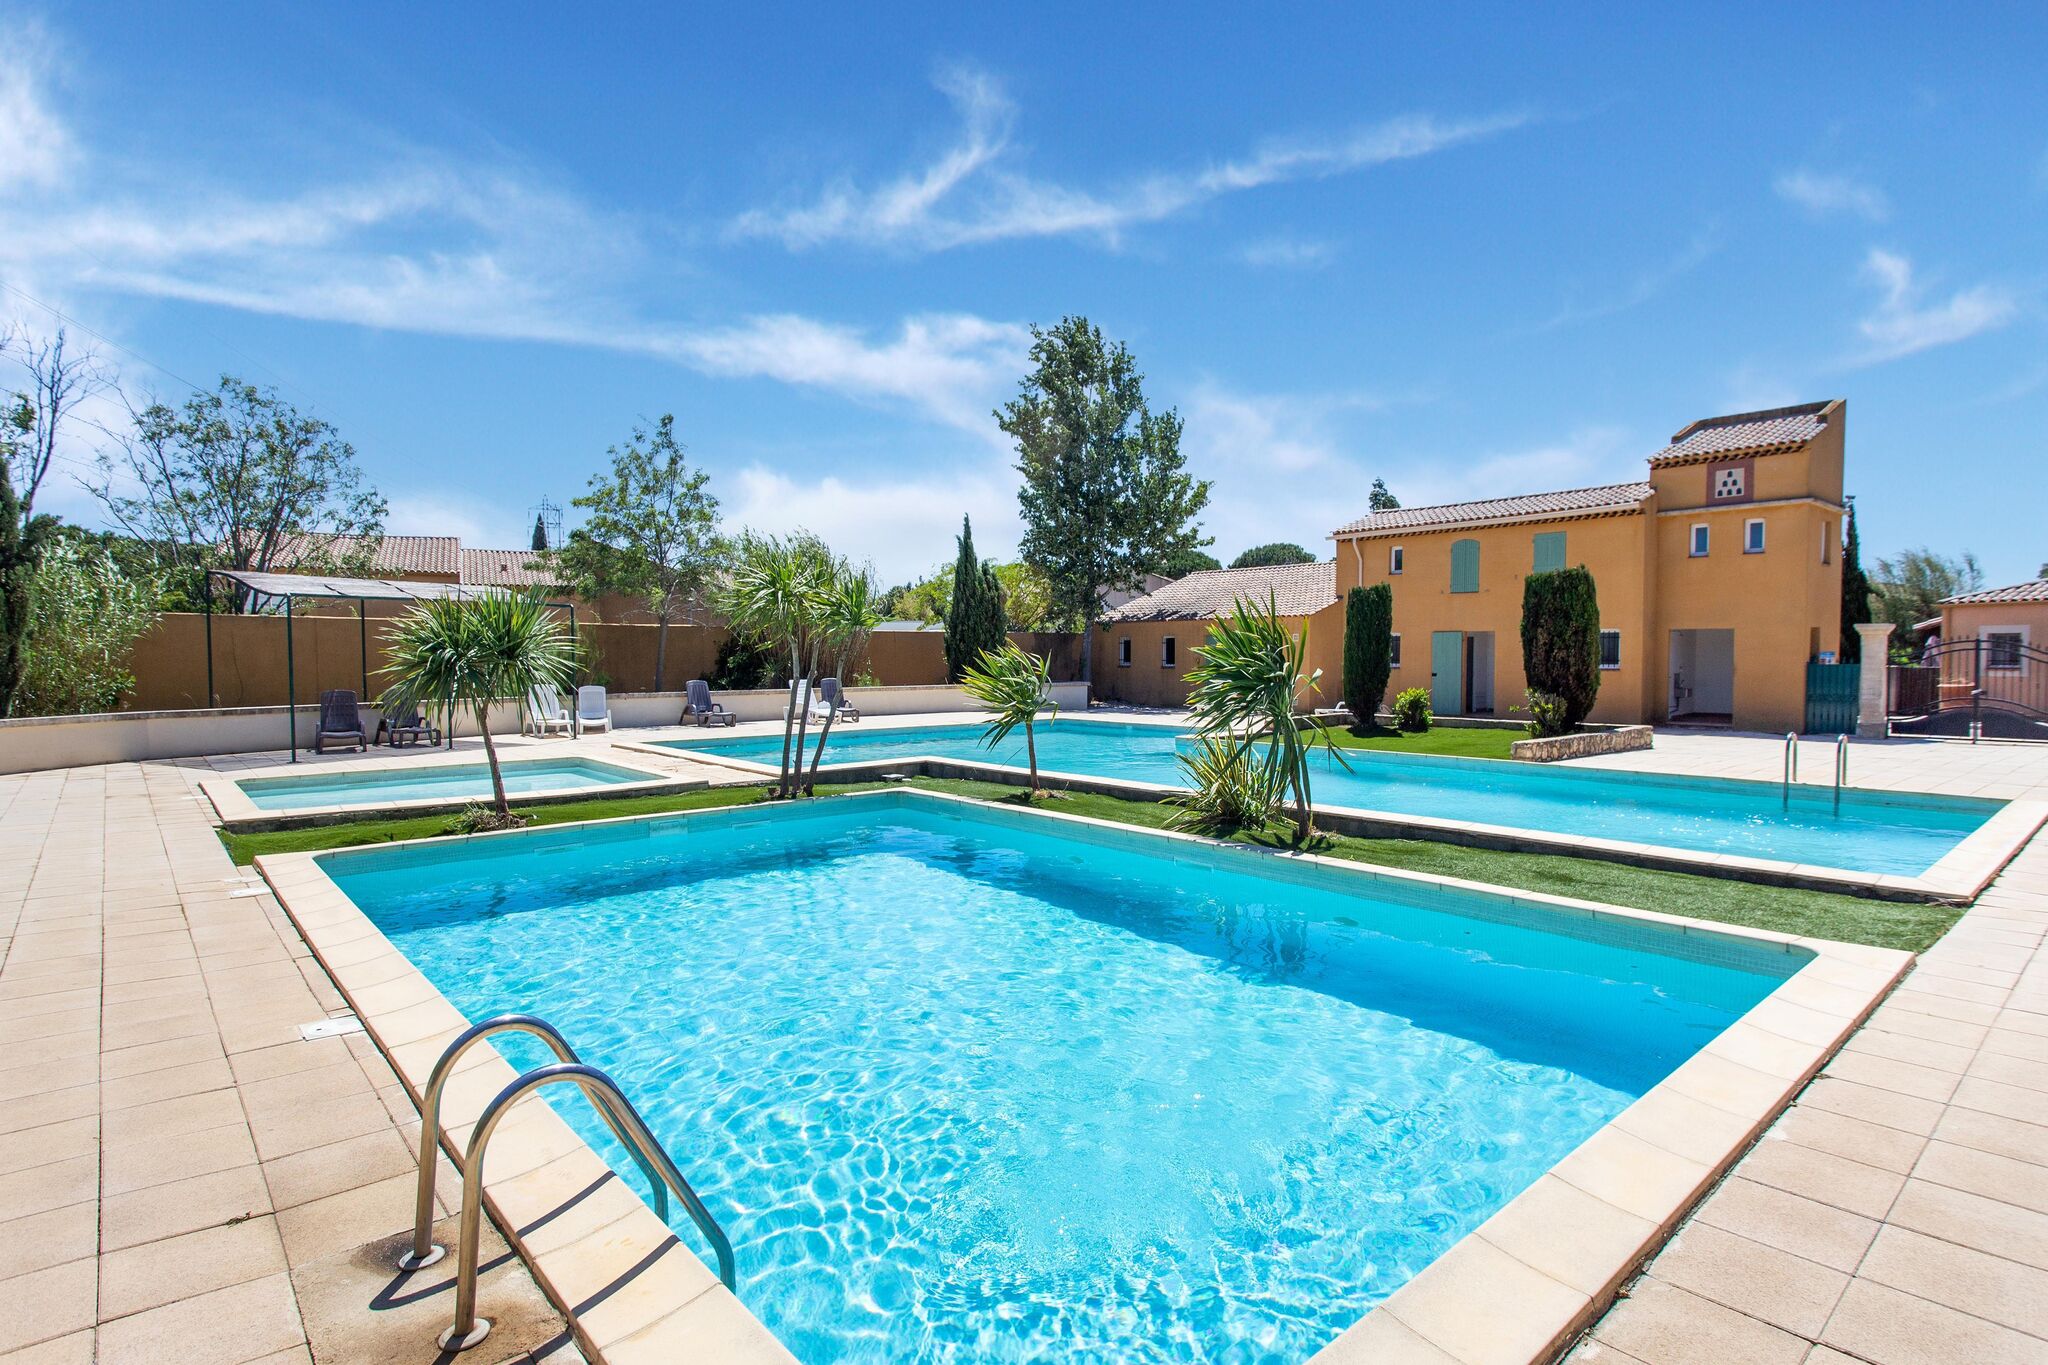 Maison de vacances confortable avec piscine, jardin, terrasse, étang